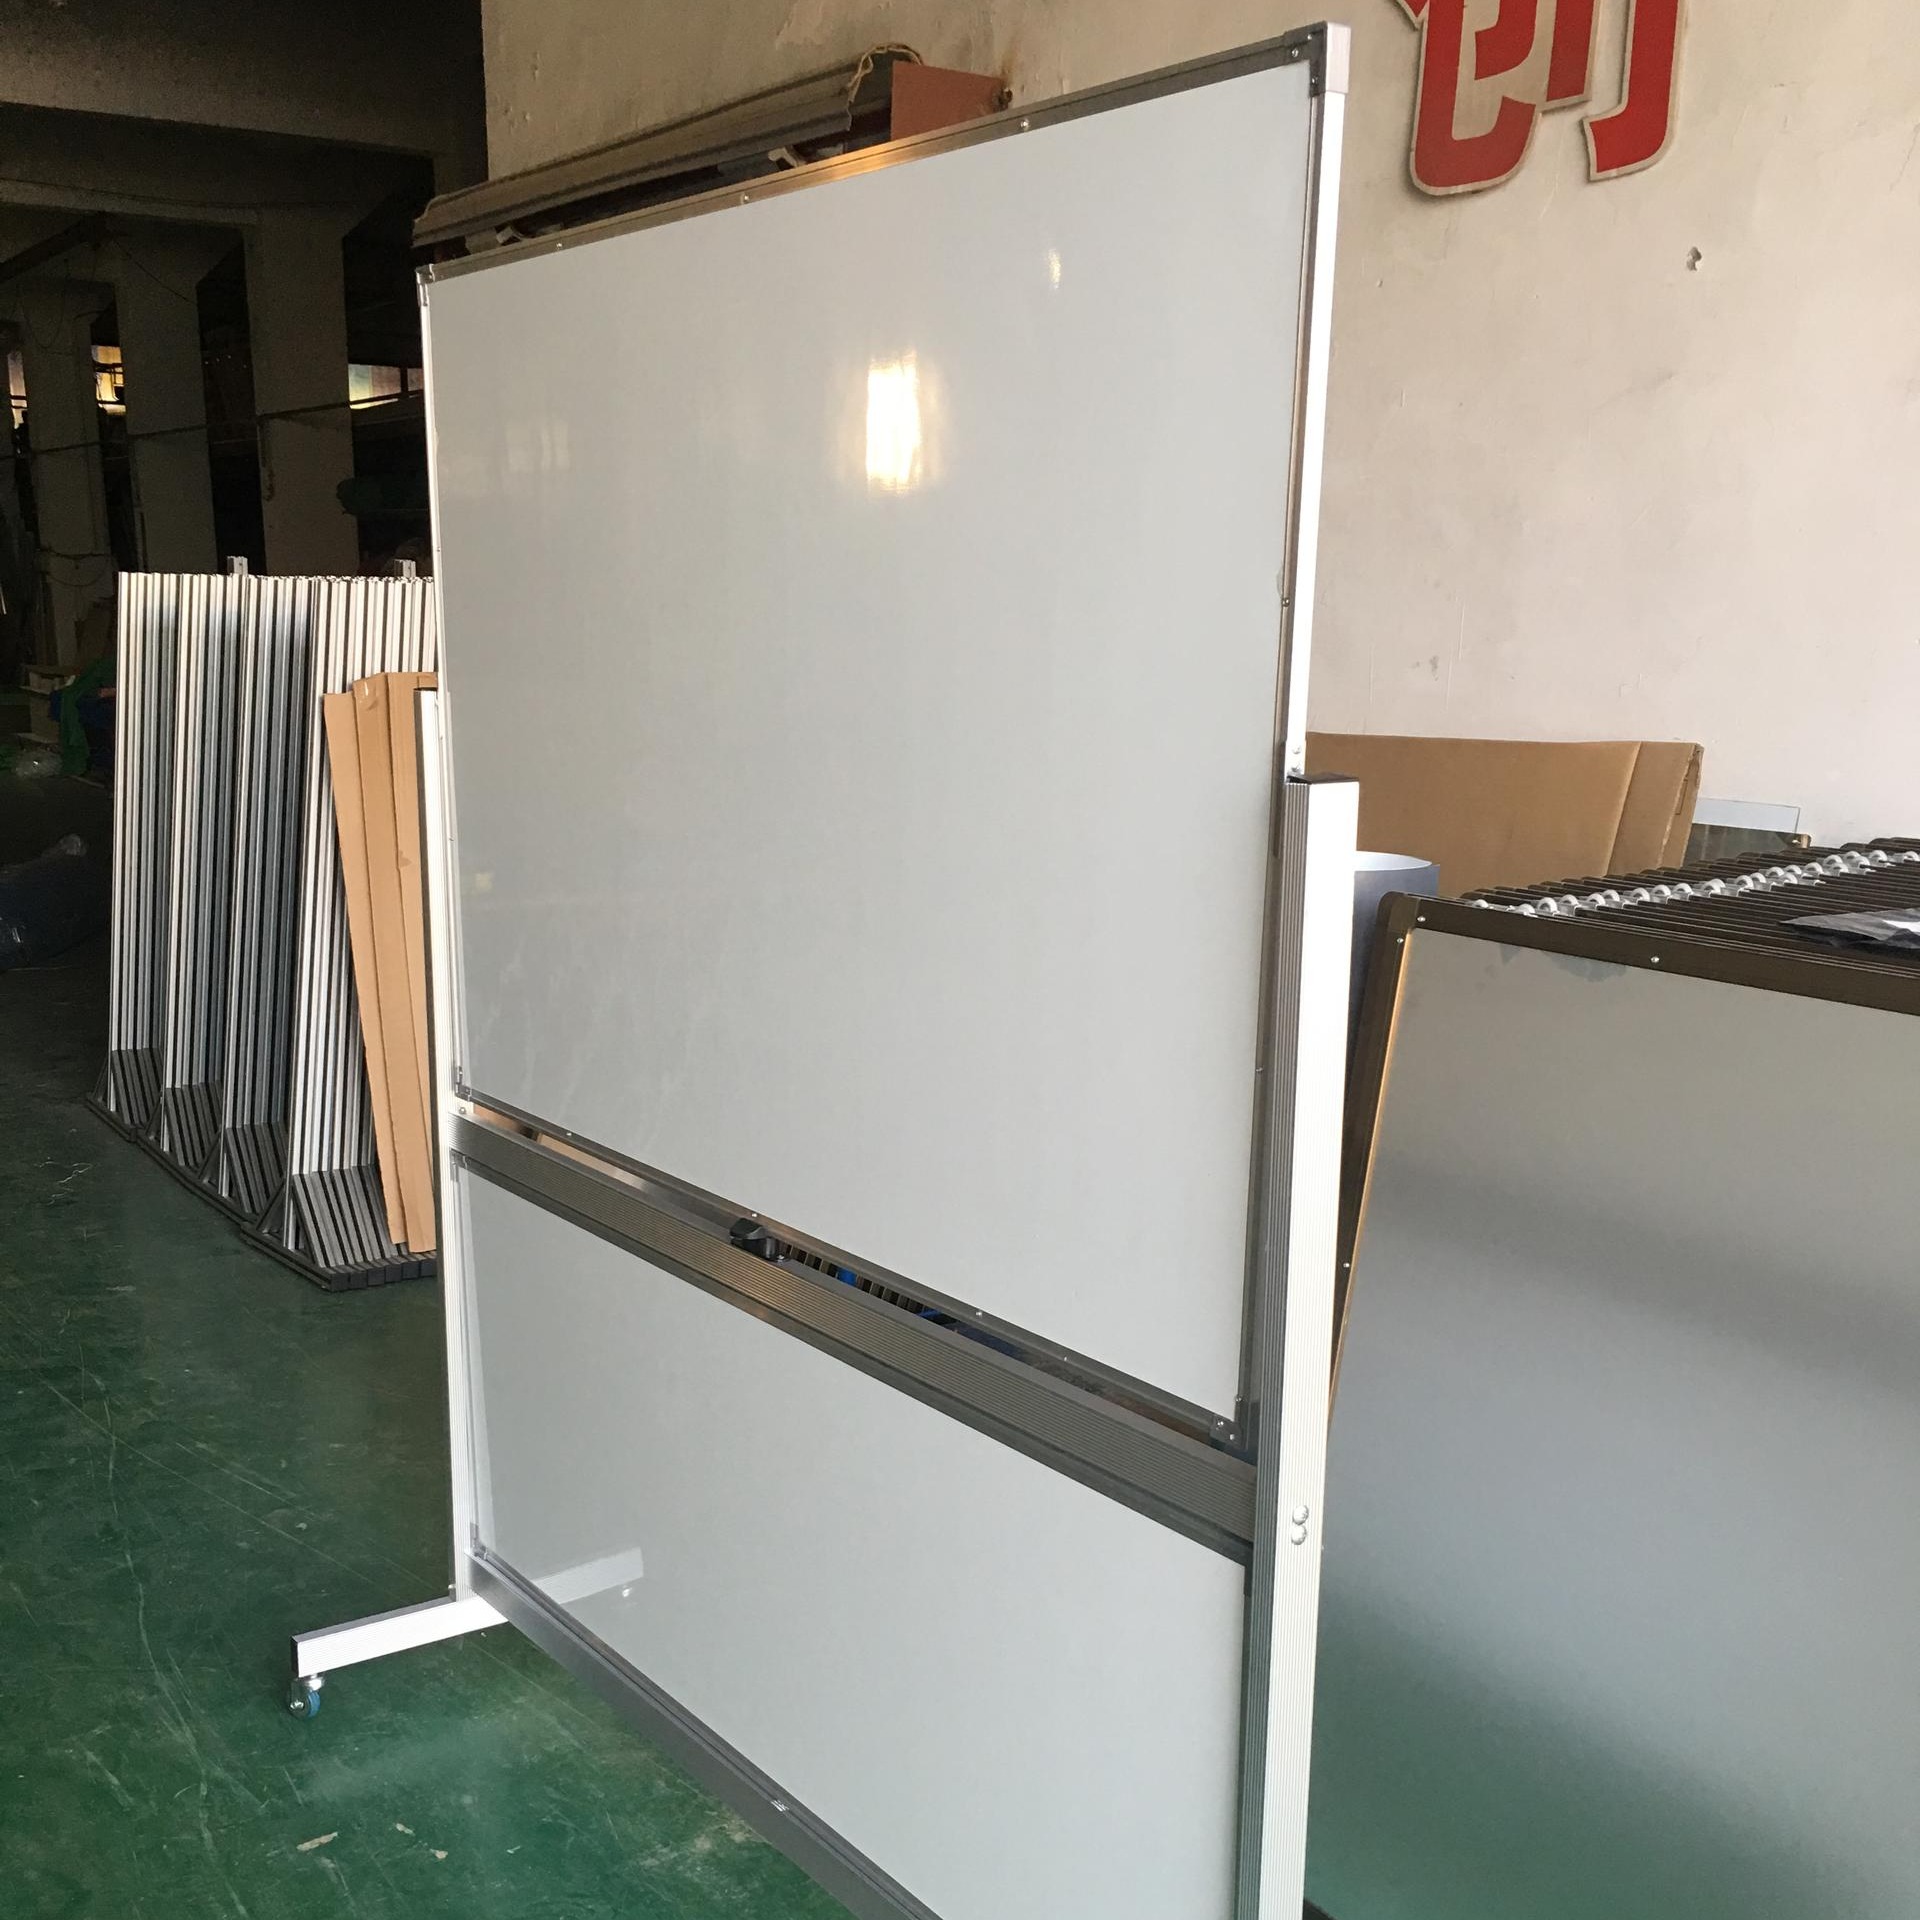 教学白板使用培训 教学移动白板尺寸 教学用白板厂家